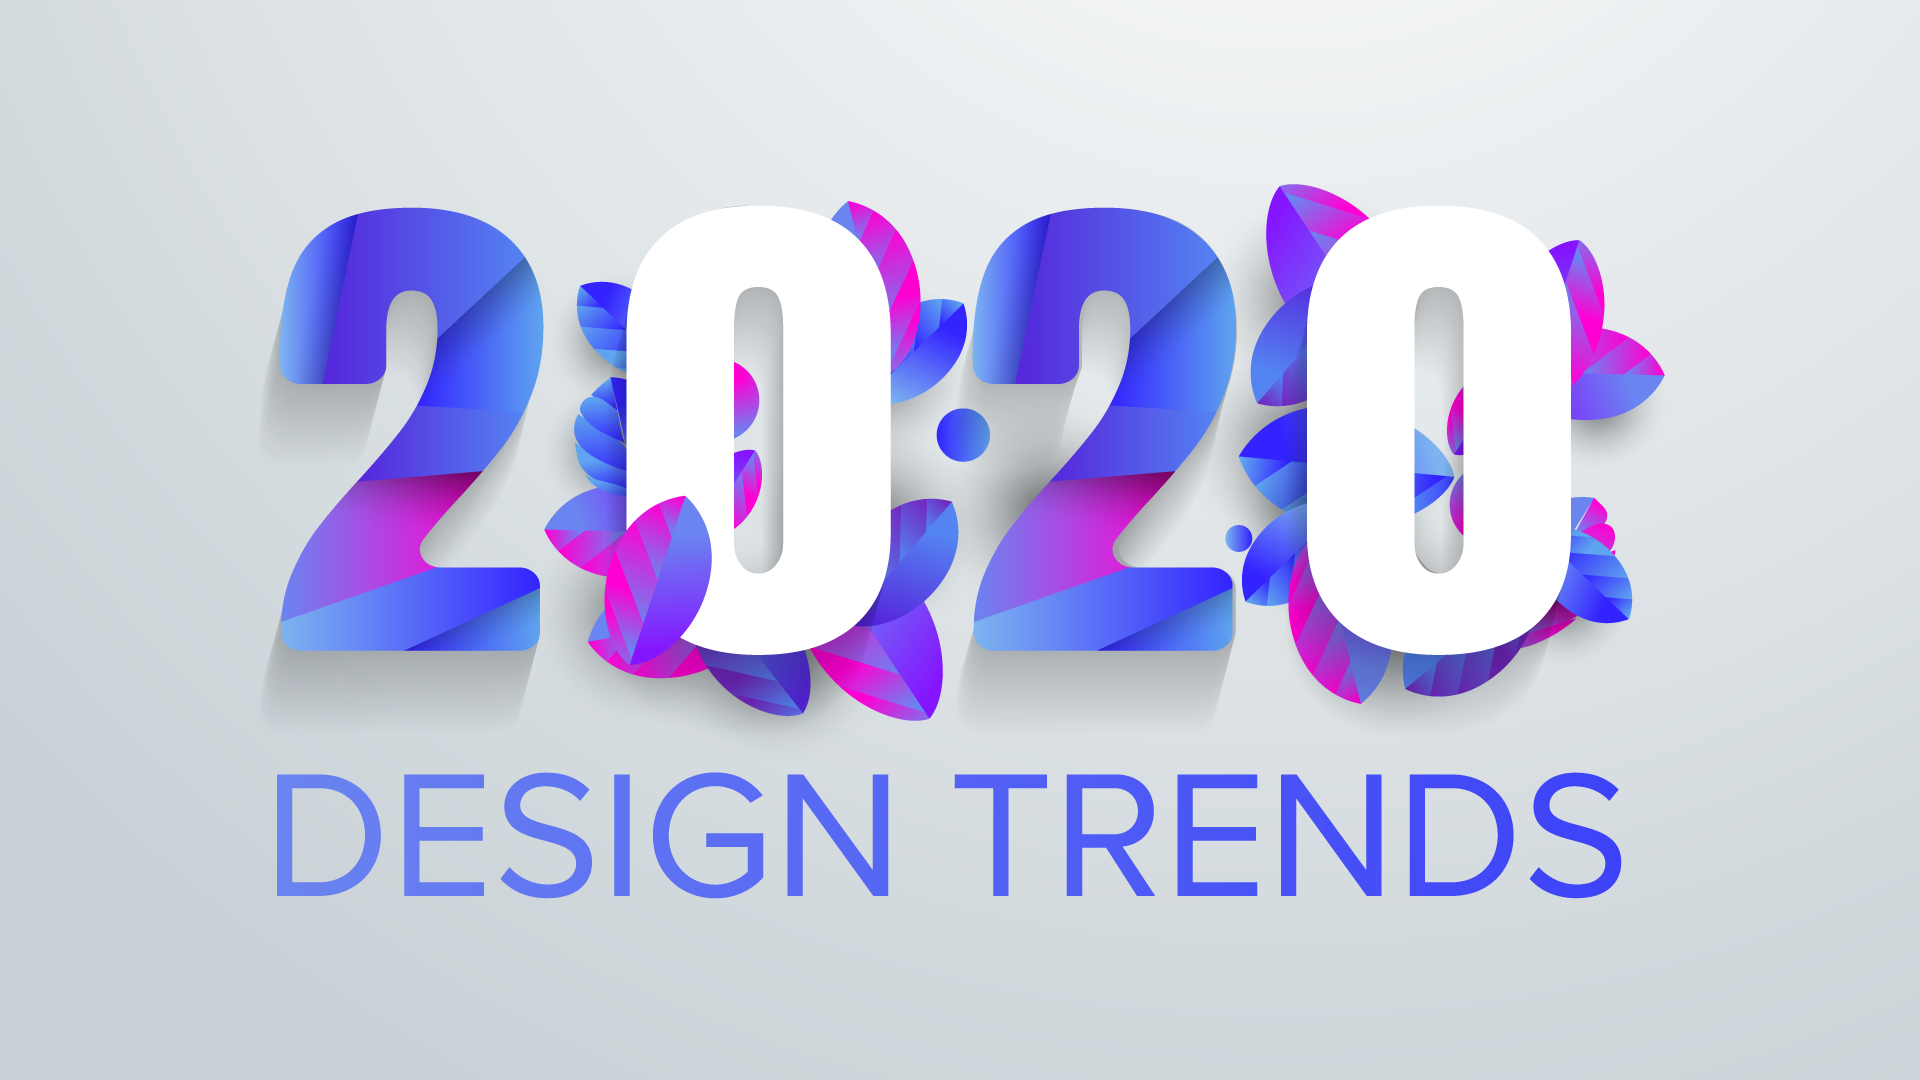 Design Trends 2020 floral 